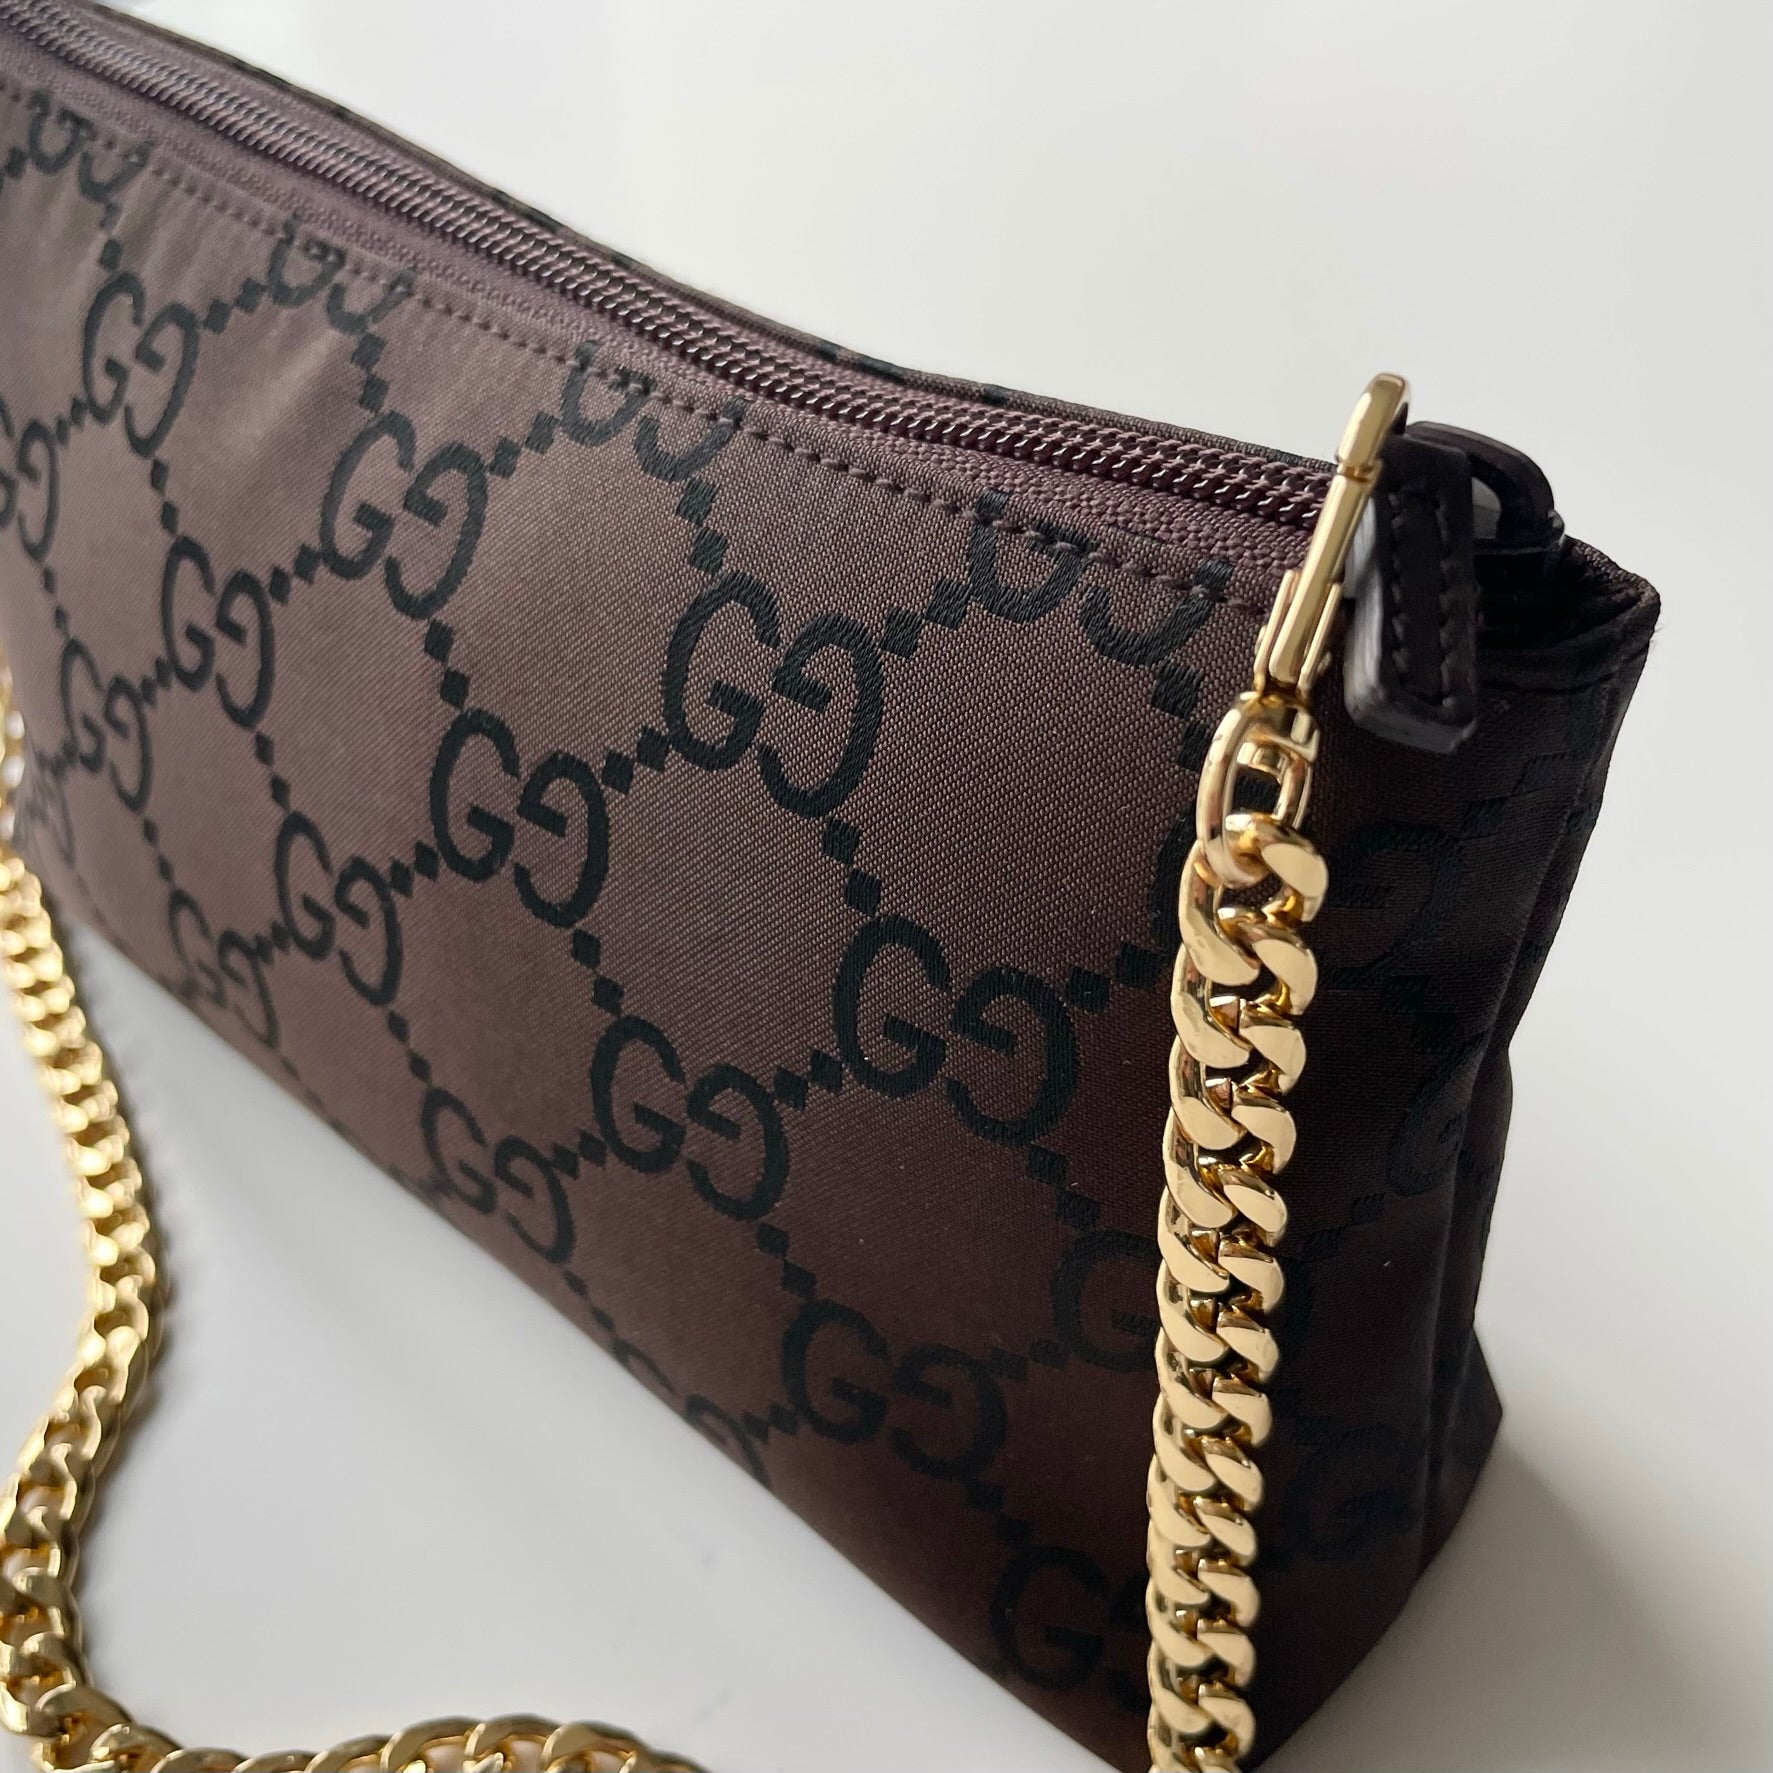 Gucci Pouch/Wristlet Canvas Bag | Gucci clutch bag, Gucci pouch, Vintage clutch  purse